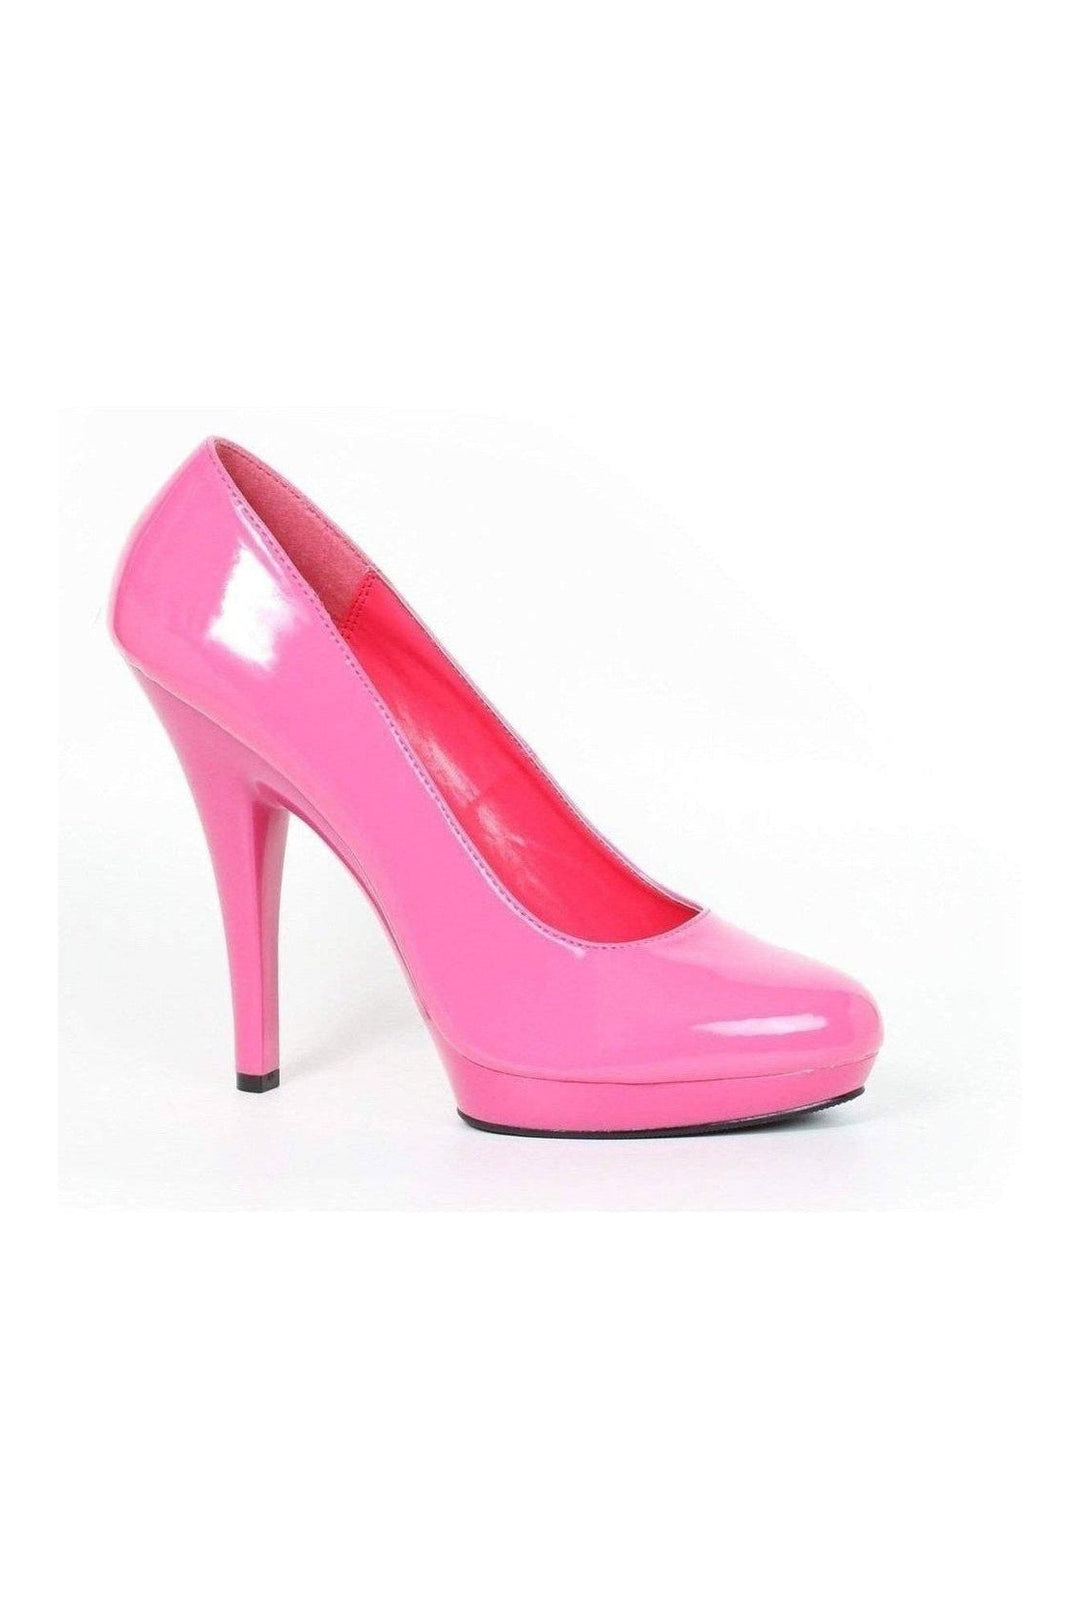 521-FEMME-W Pump | Fuchsia Patent-Ellie Shoes-Fuchsia-Pumps-SEXYSHOES.COM